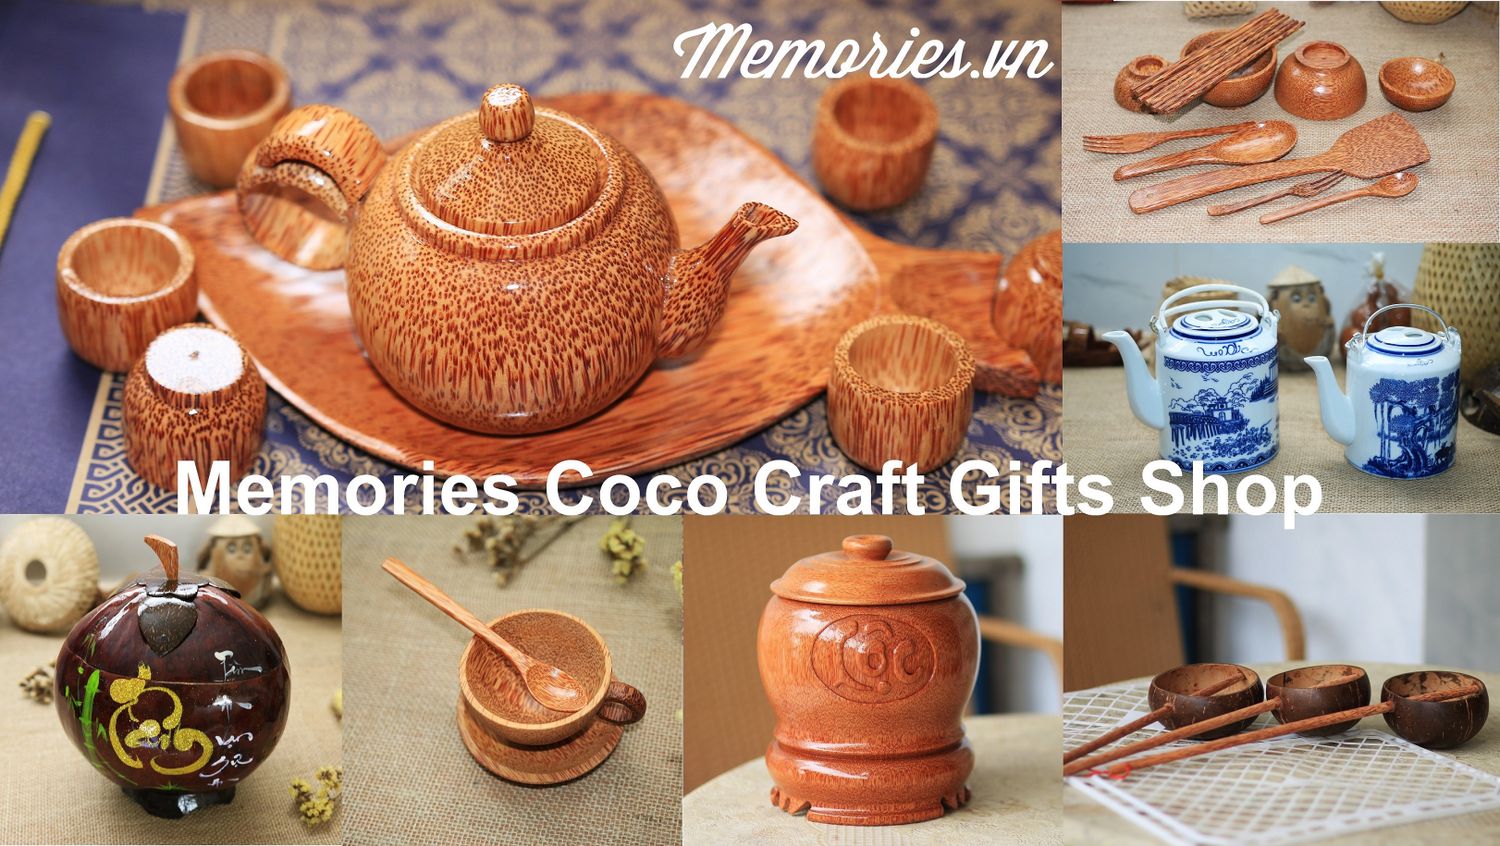 Memories Baby & Craft Gifts Shop - Đồ trẻ em & quà tặng trang trí